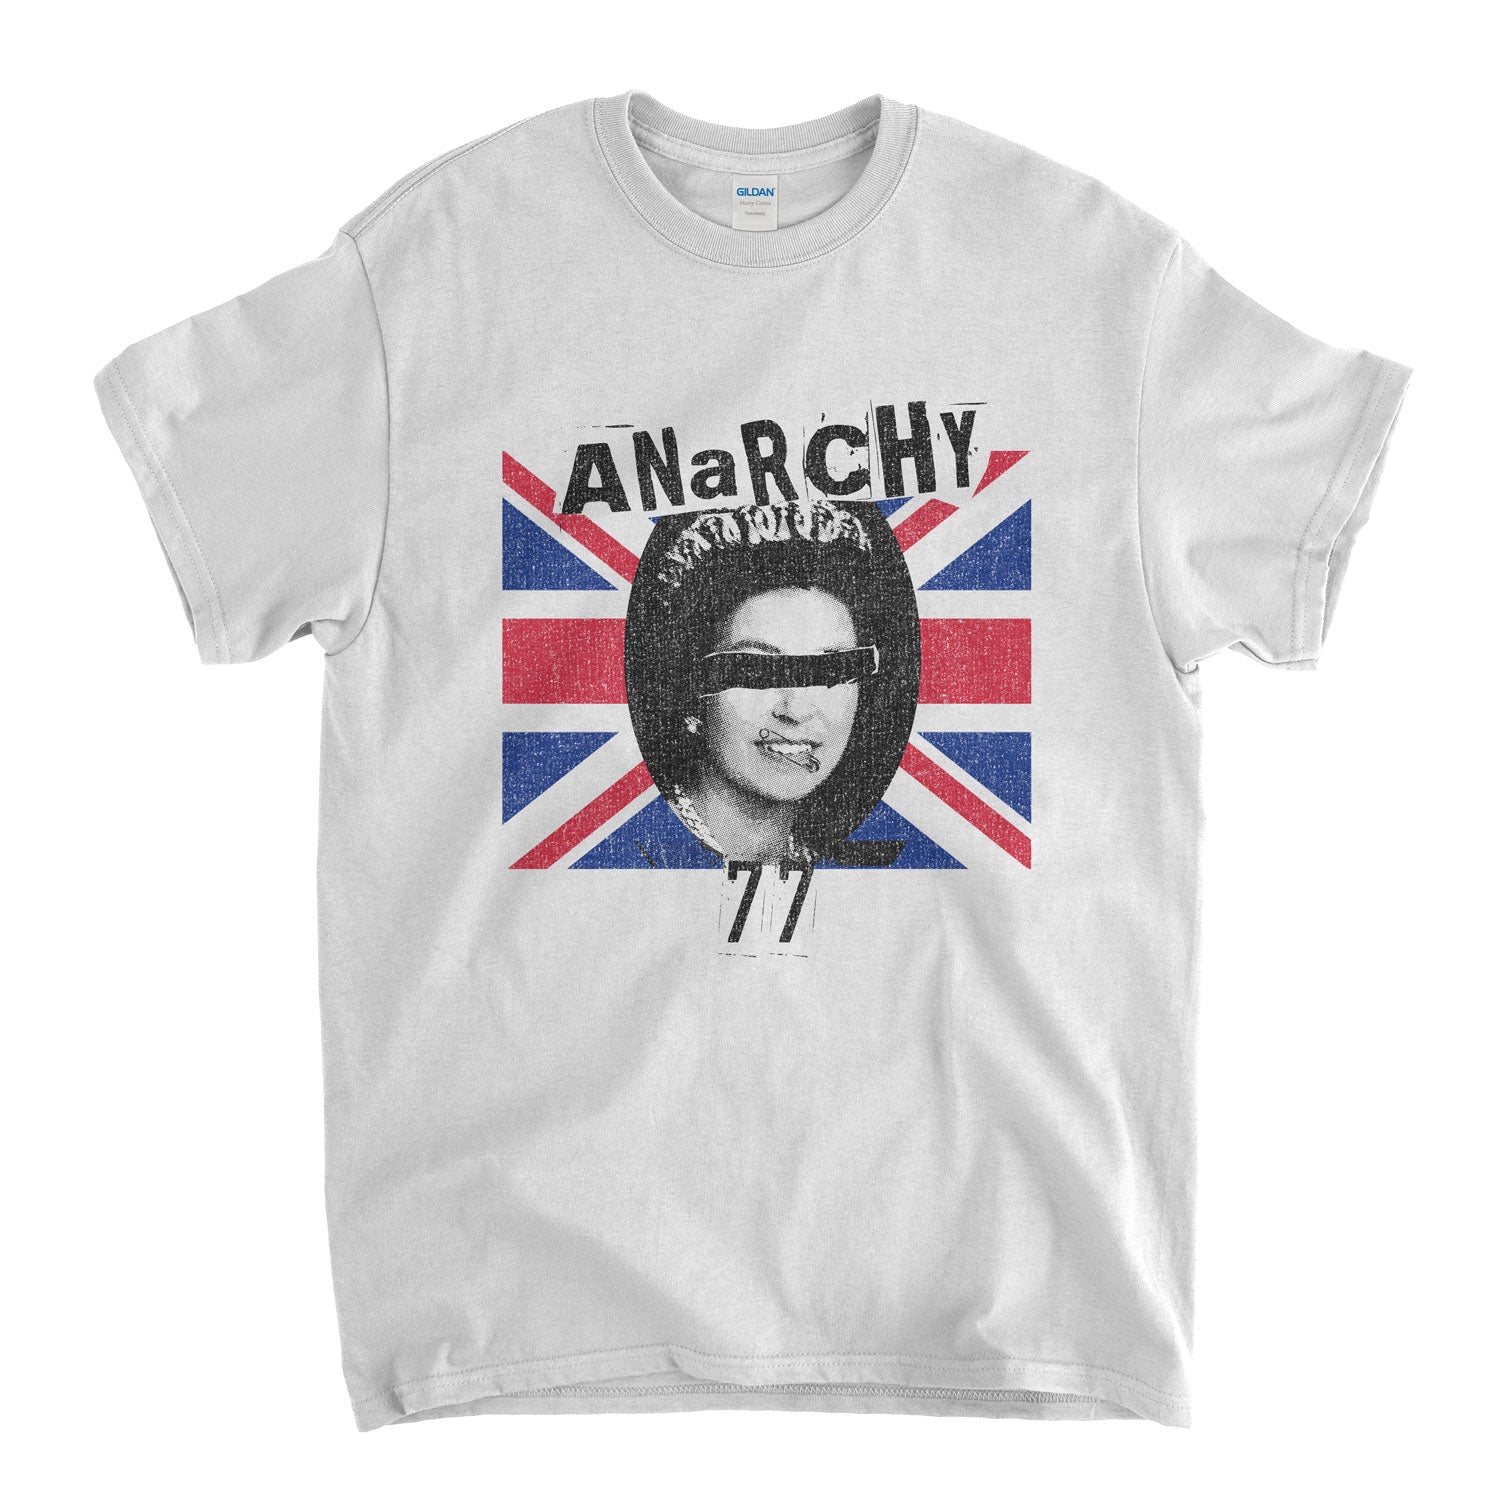 Old Skool Hooligans Classic Punk T Shirt - Anarchy 77